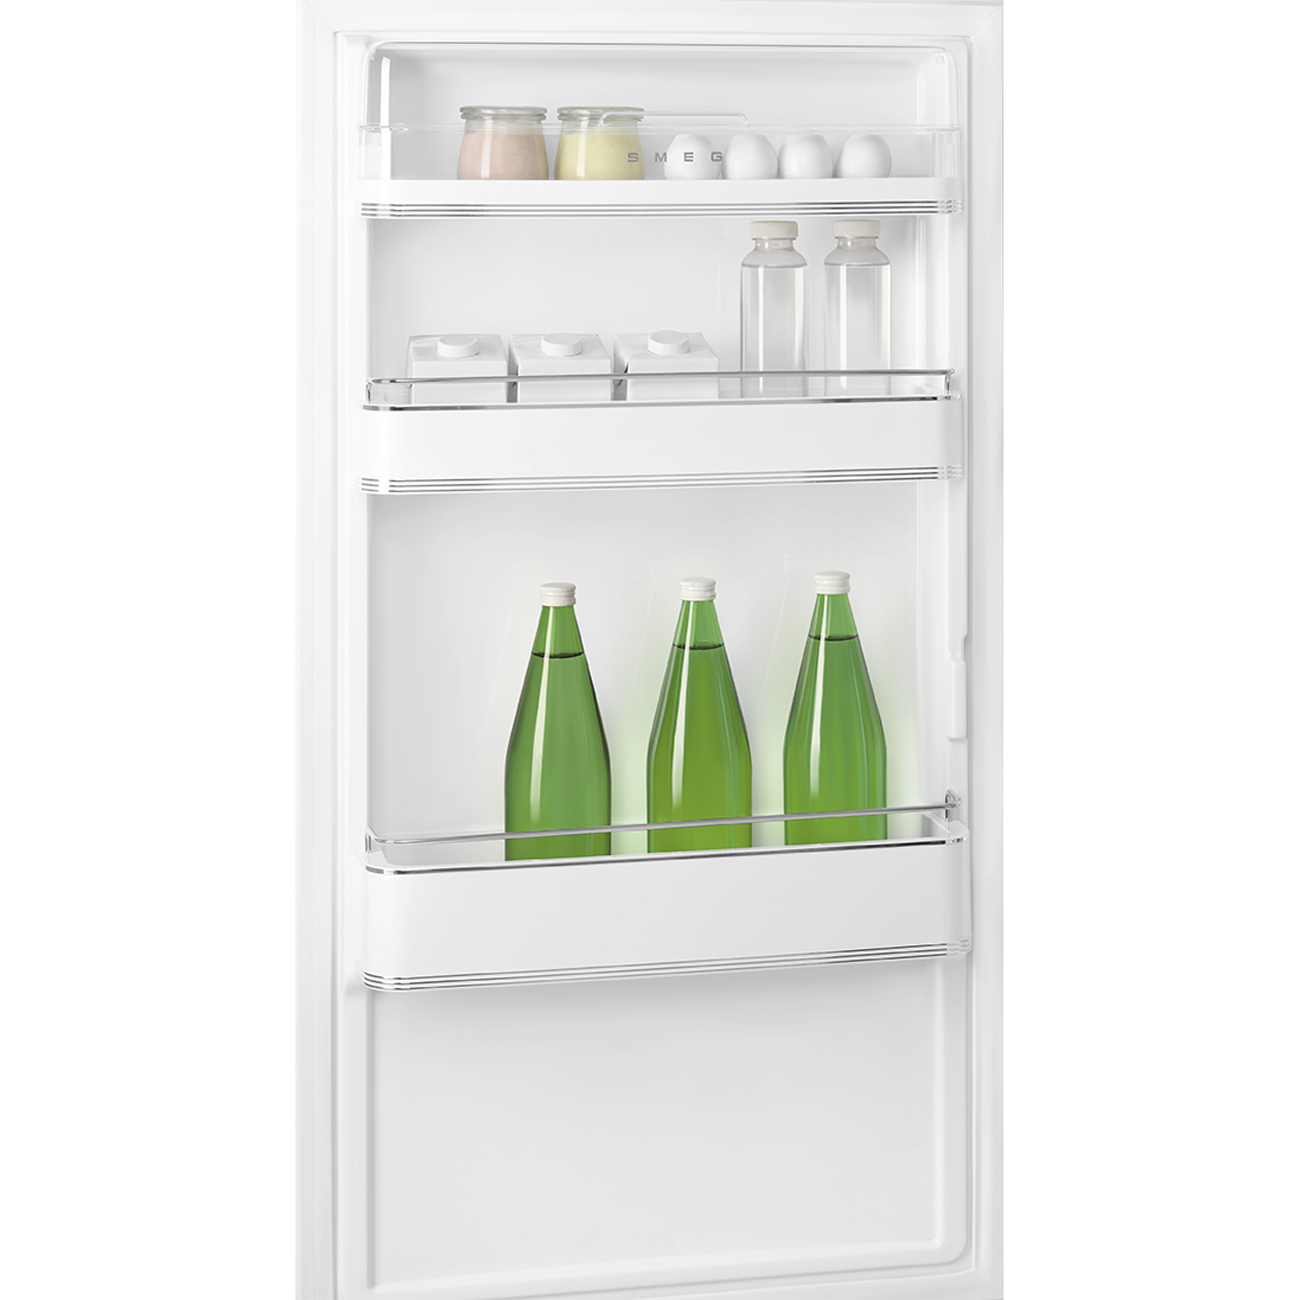 Pastellblau Retro-Kühlschränke von Smeg_9